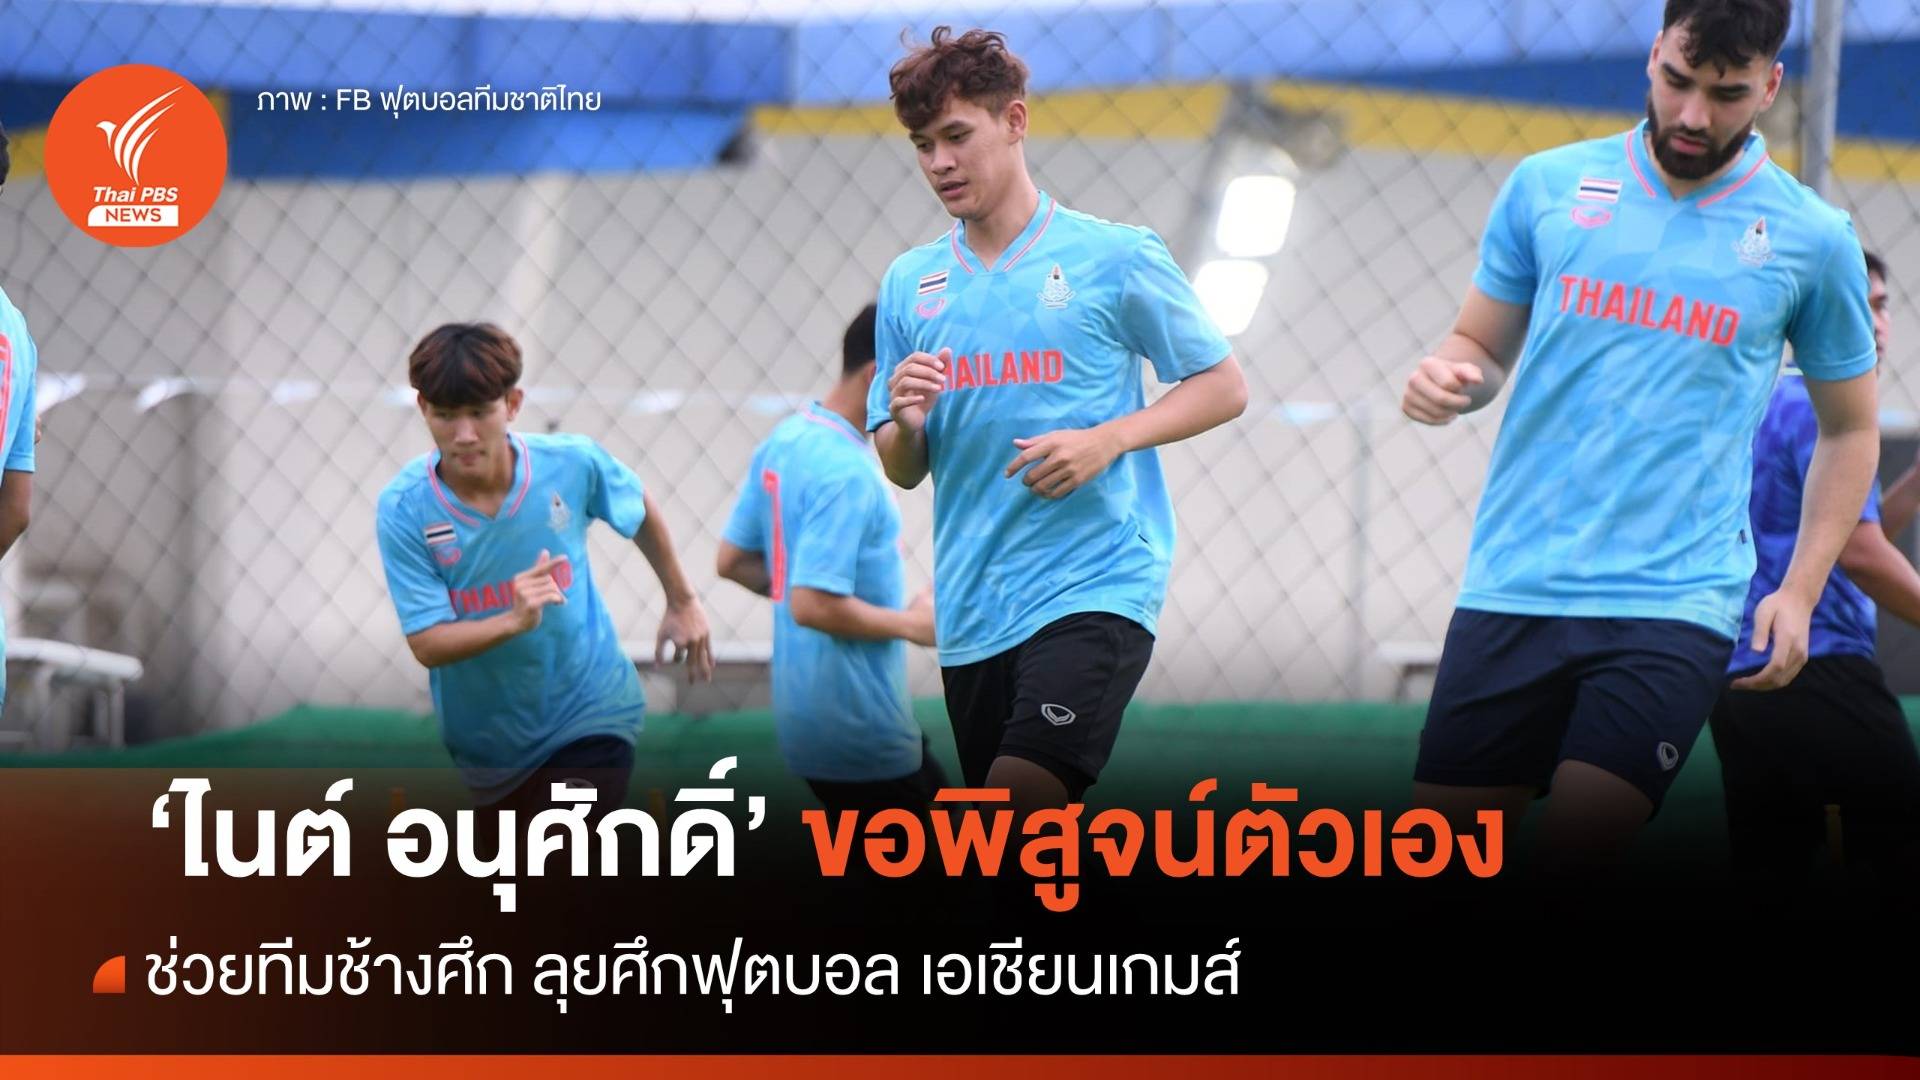 "อนุศักดิ์" หวังพิสูจน์ผลงานช่วยทีมชาติไทย ดวลแข้งศึกเอเชียนเกมส์ 